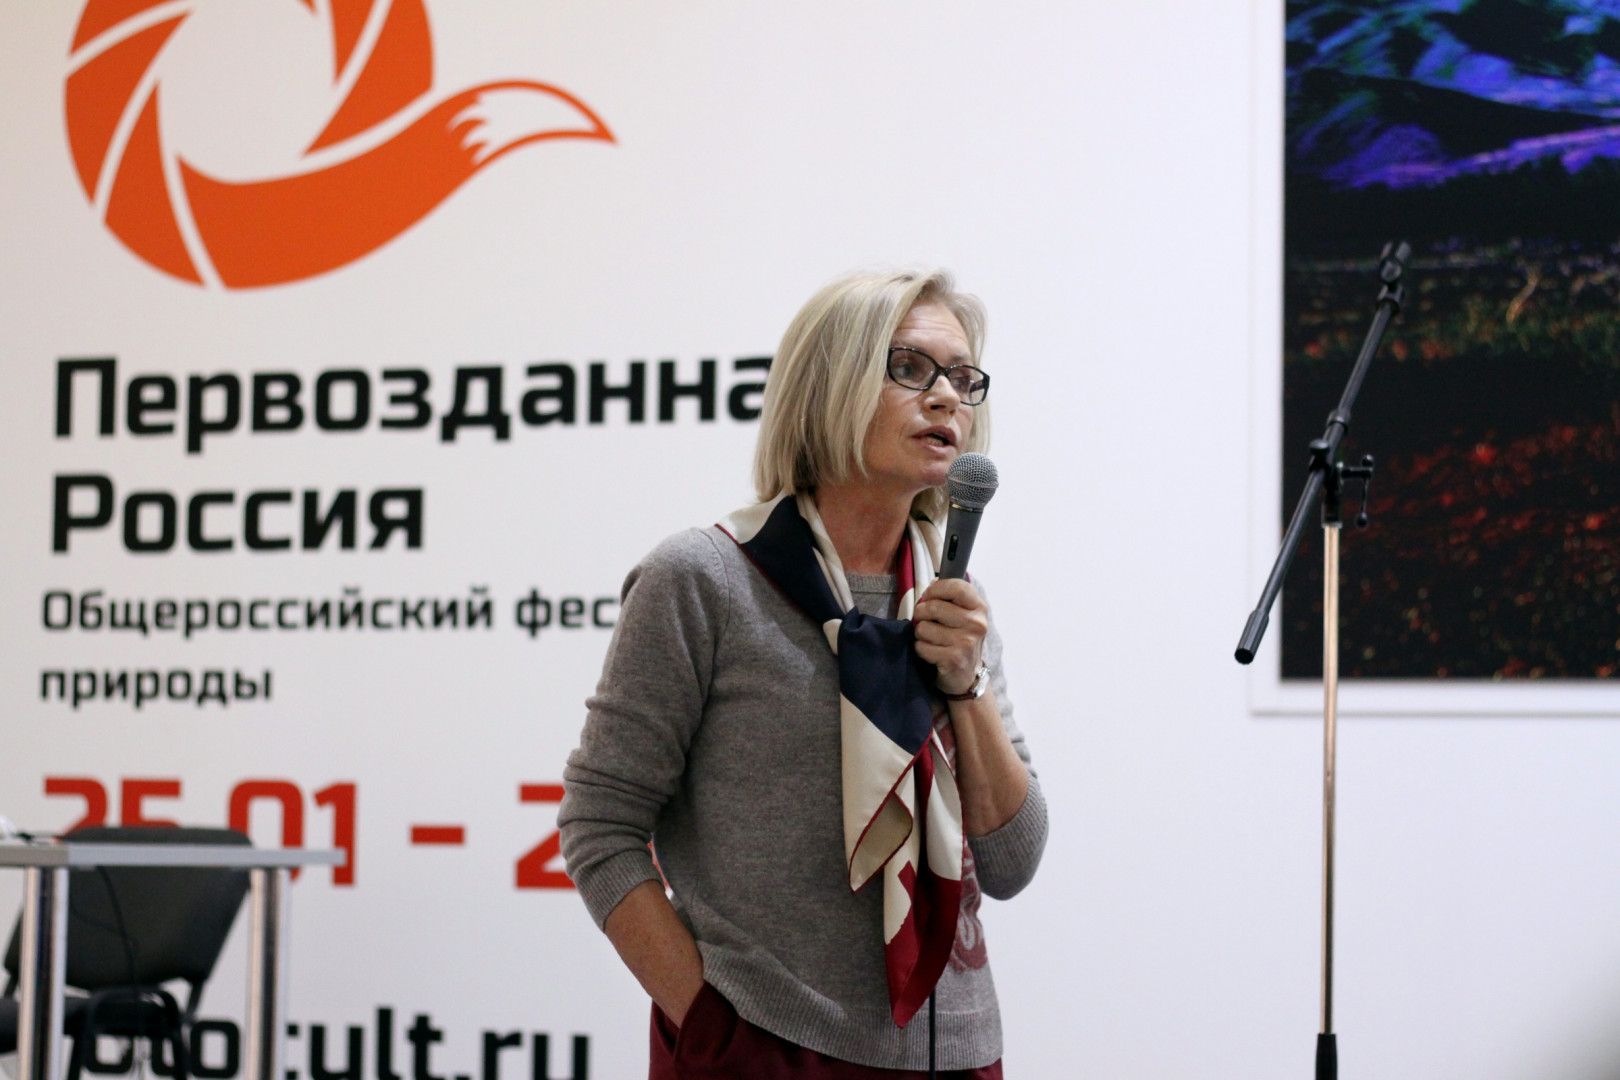 Фотогалерея, посвящённая Дню Русского географического общества в ЦДХ (1 февраля 2014)